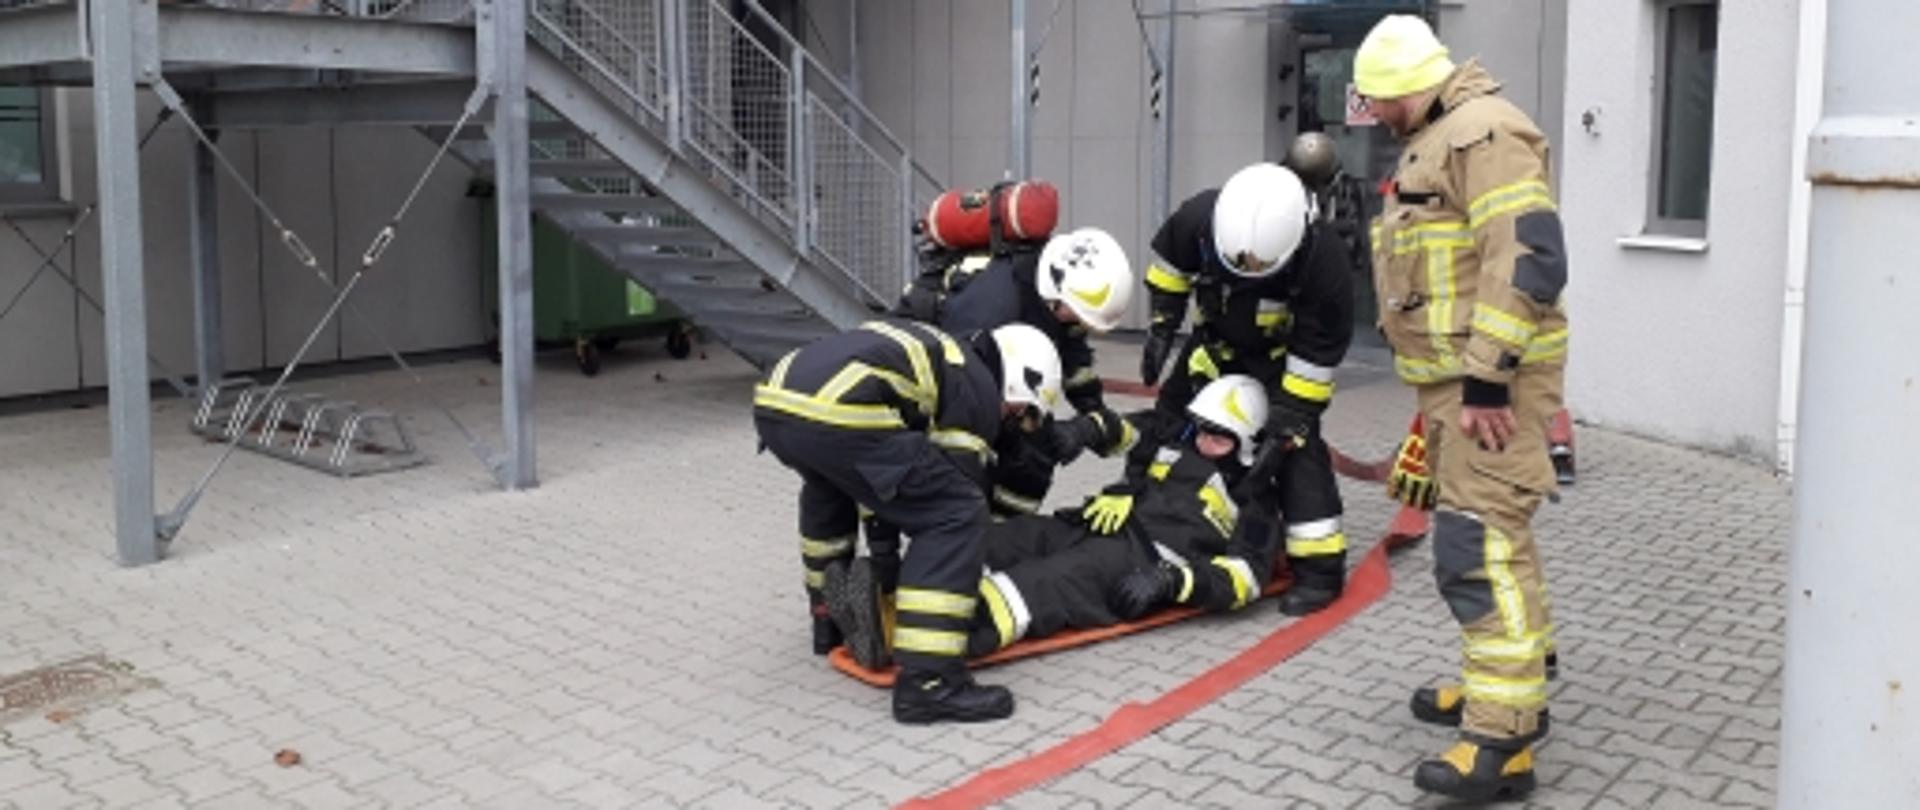 Egzamin szkolenia podstawowego OSP - ewakuacja poszkodowanego ratownika